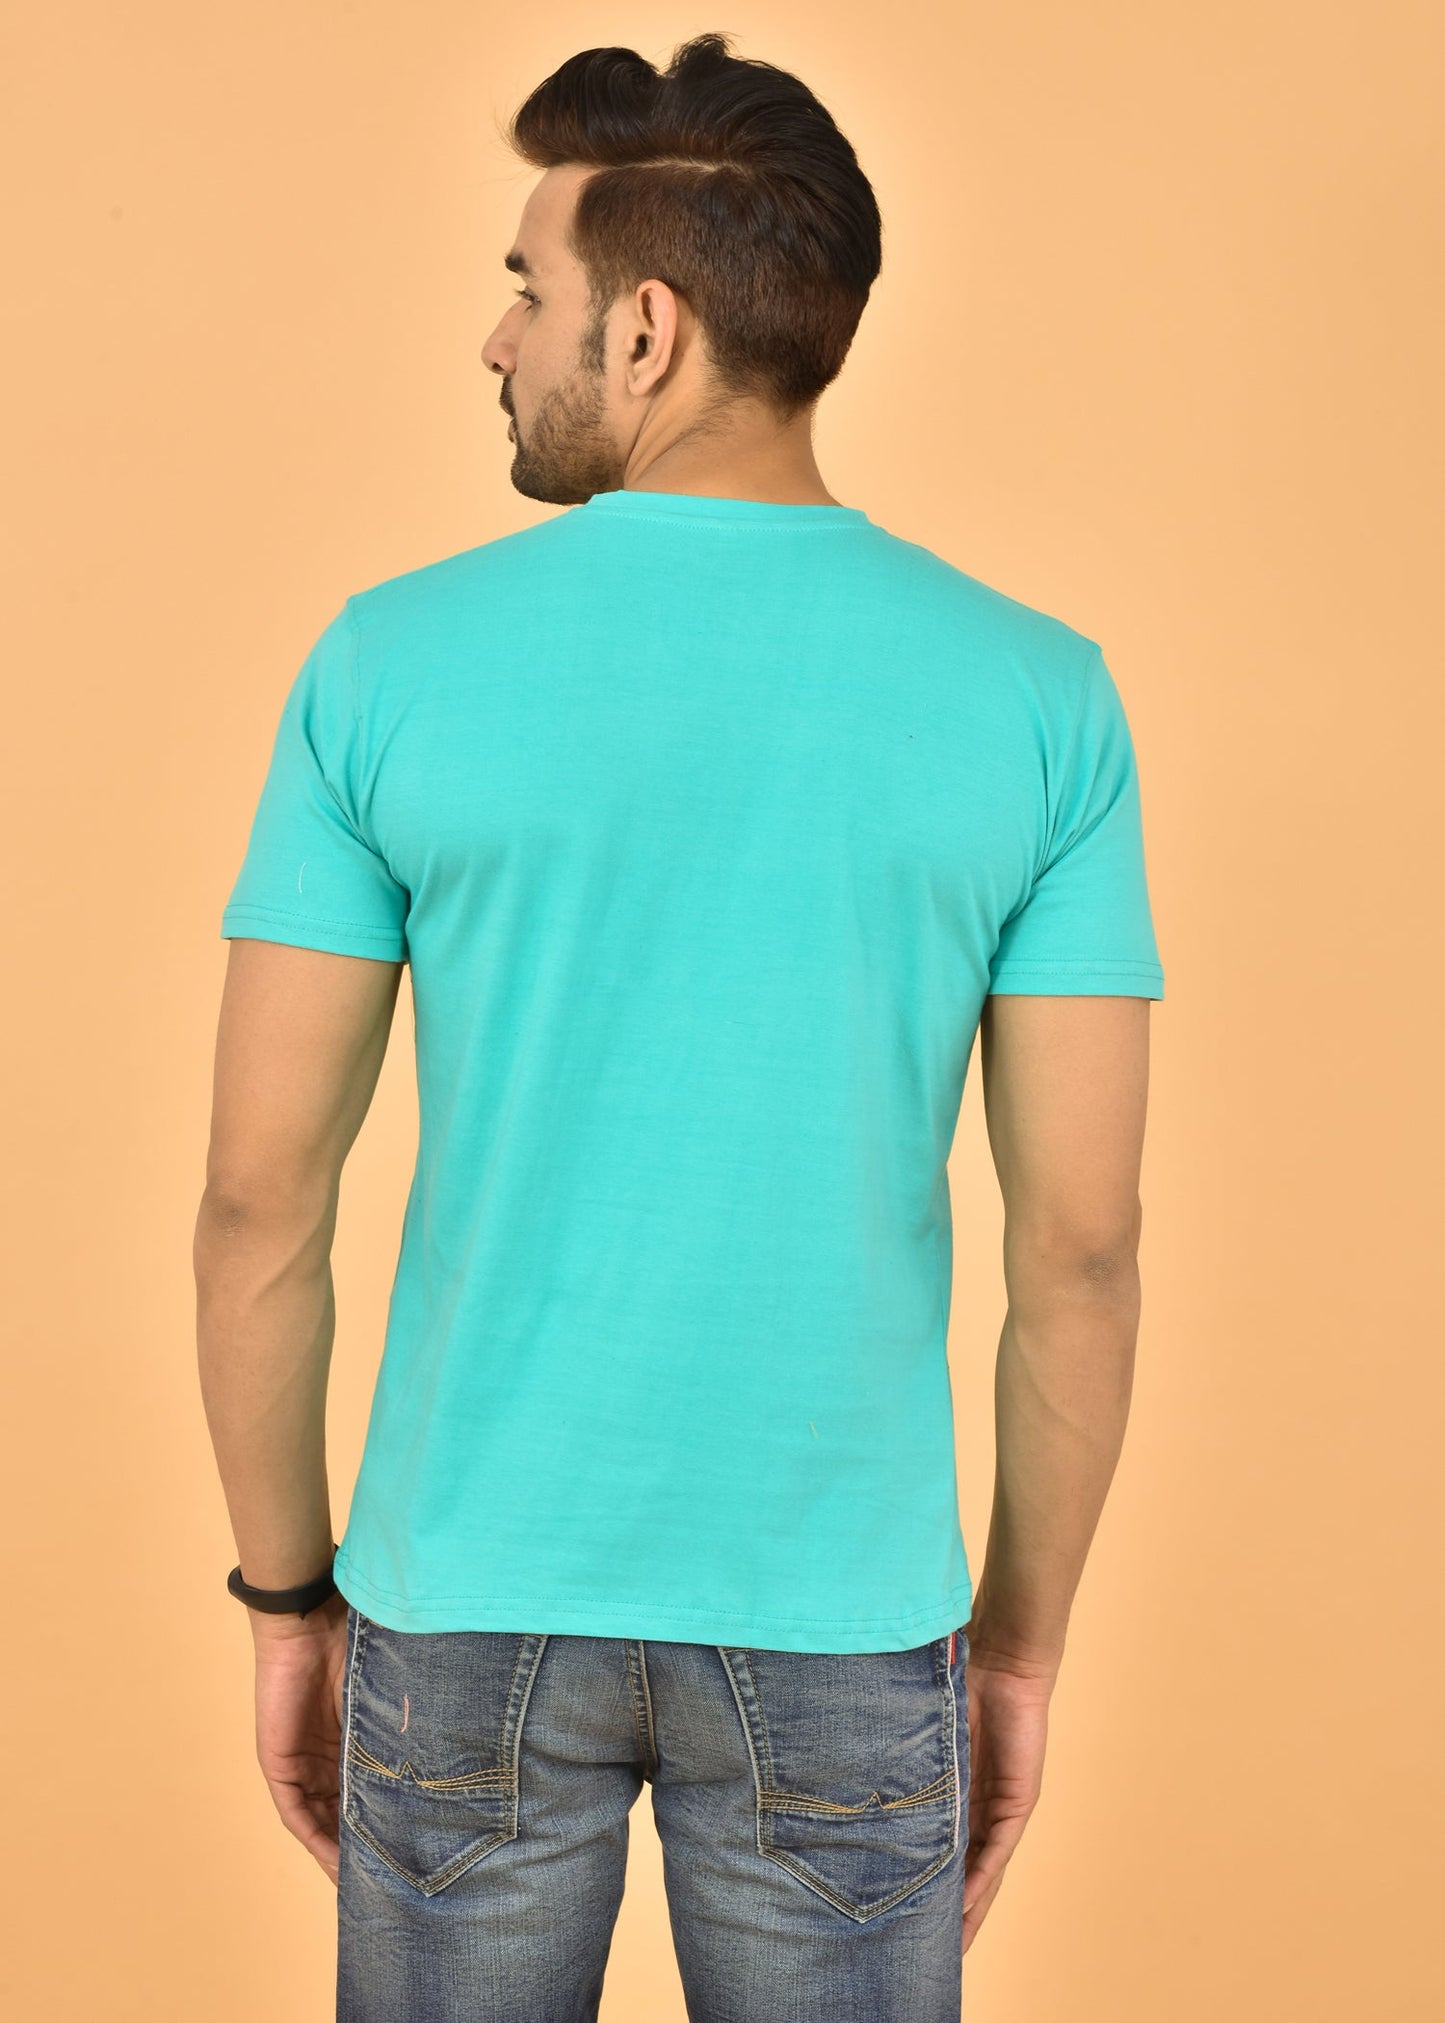 Couple Turquoise Round Neck Cotton Blend Plain T-shirt Set